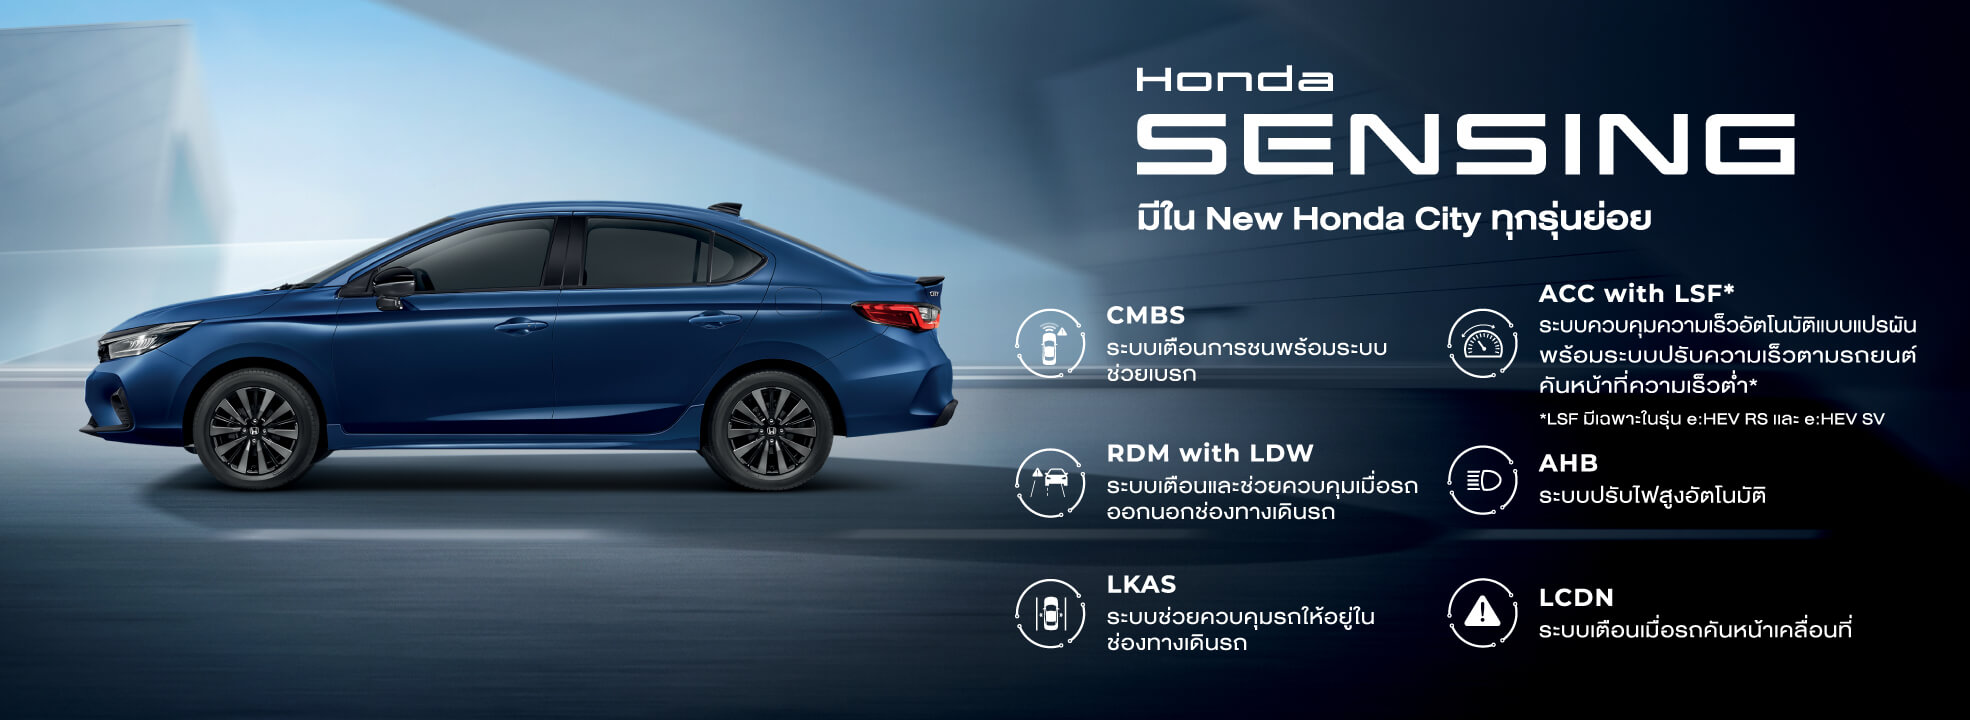 เทคโนโลยีความปลอดภัยอัจฉริยะ Honda SENSING มีใน New Honda City ทุกรุ่นย่อย